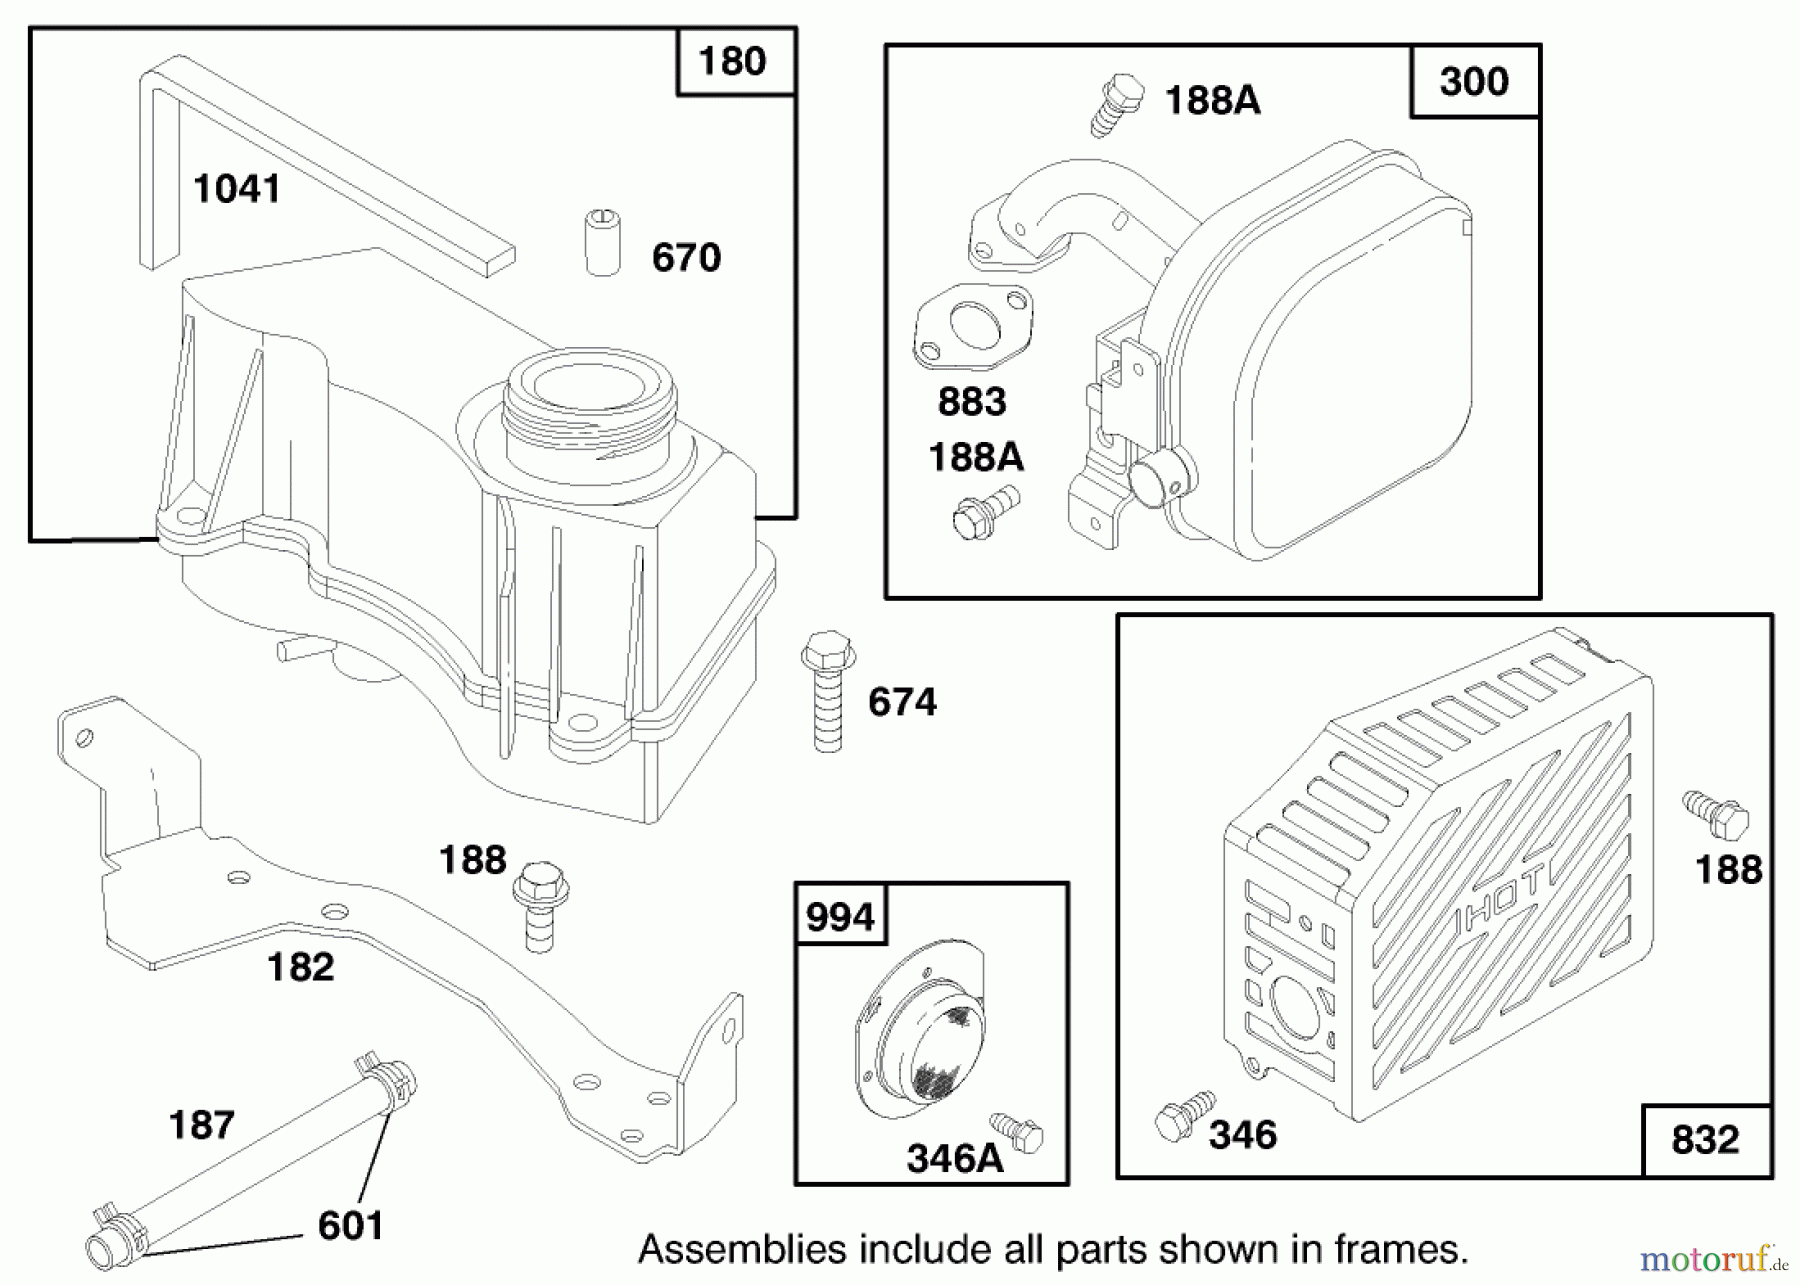  Toro Neu Mowers, Walk-Behind Seite 1 20482 - Toro Super Recycler Mower, 1997 (790000001-799999999) ENGINE GTS 150 (MODEL NO. 20483 ONLY) #5